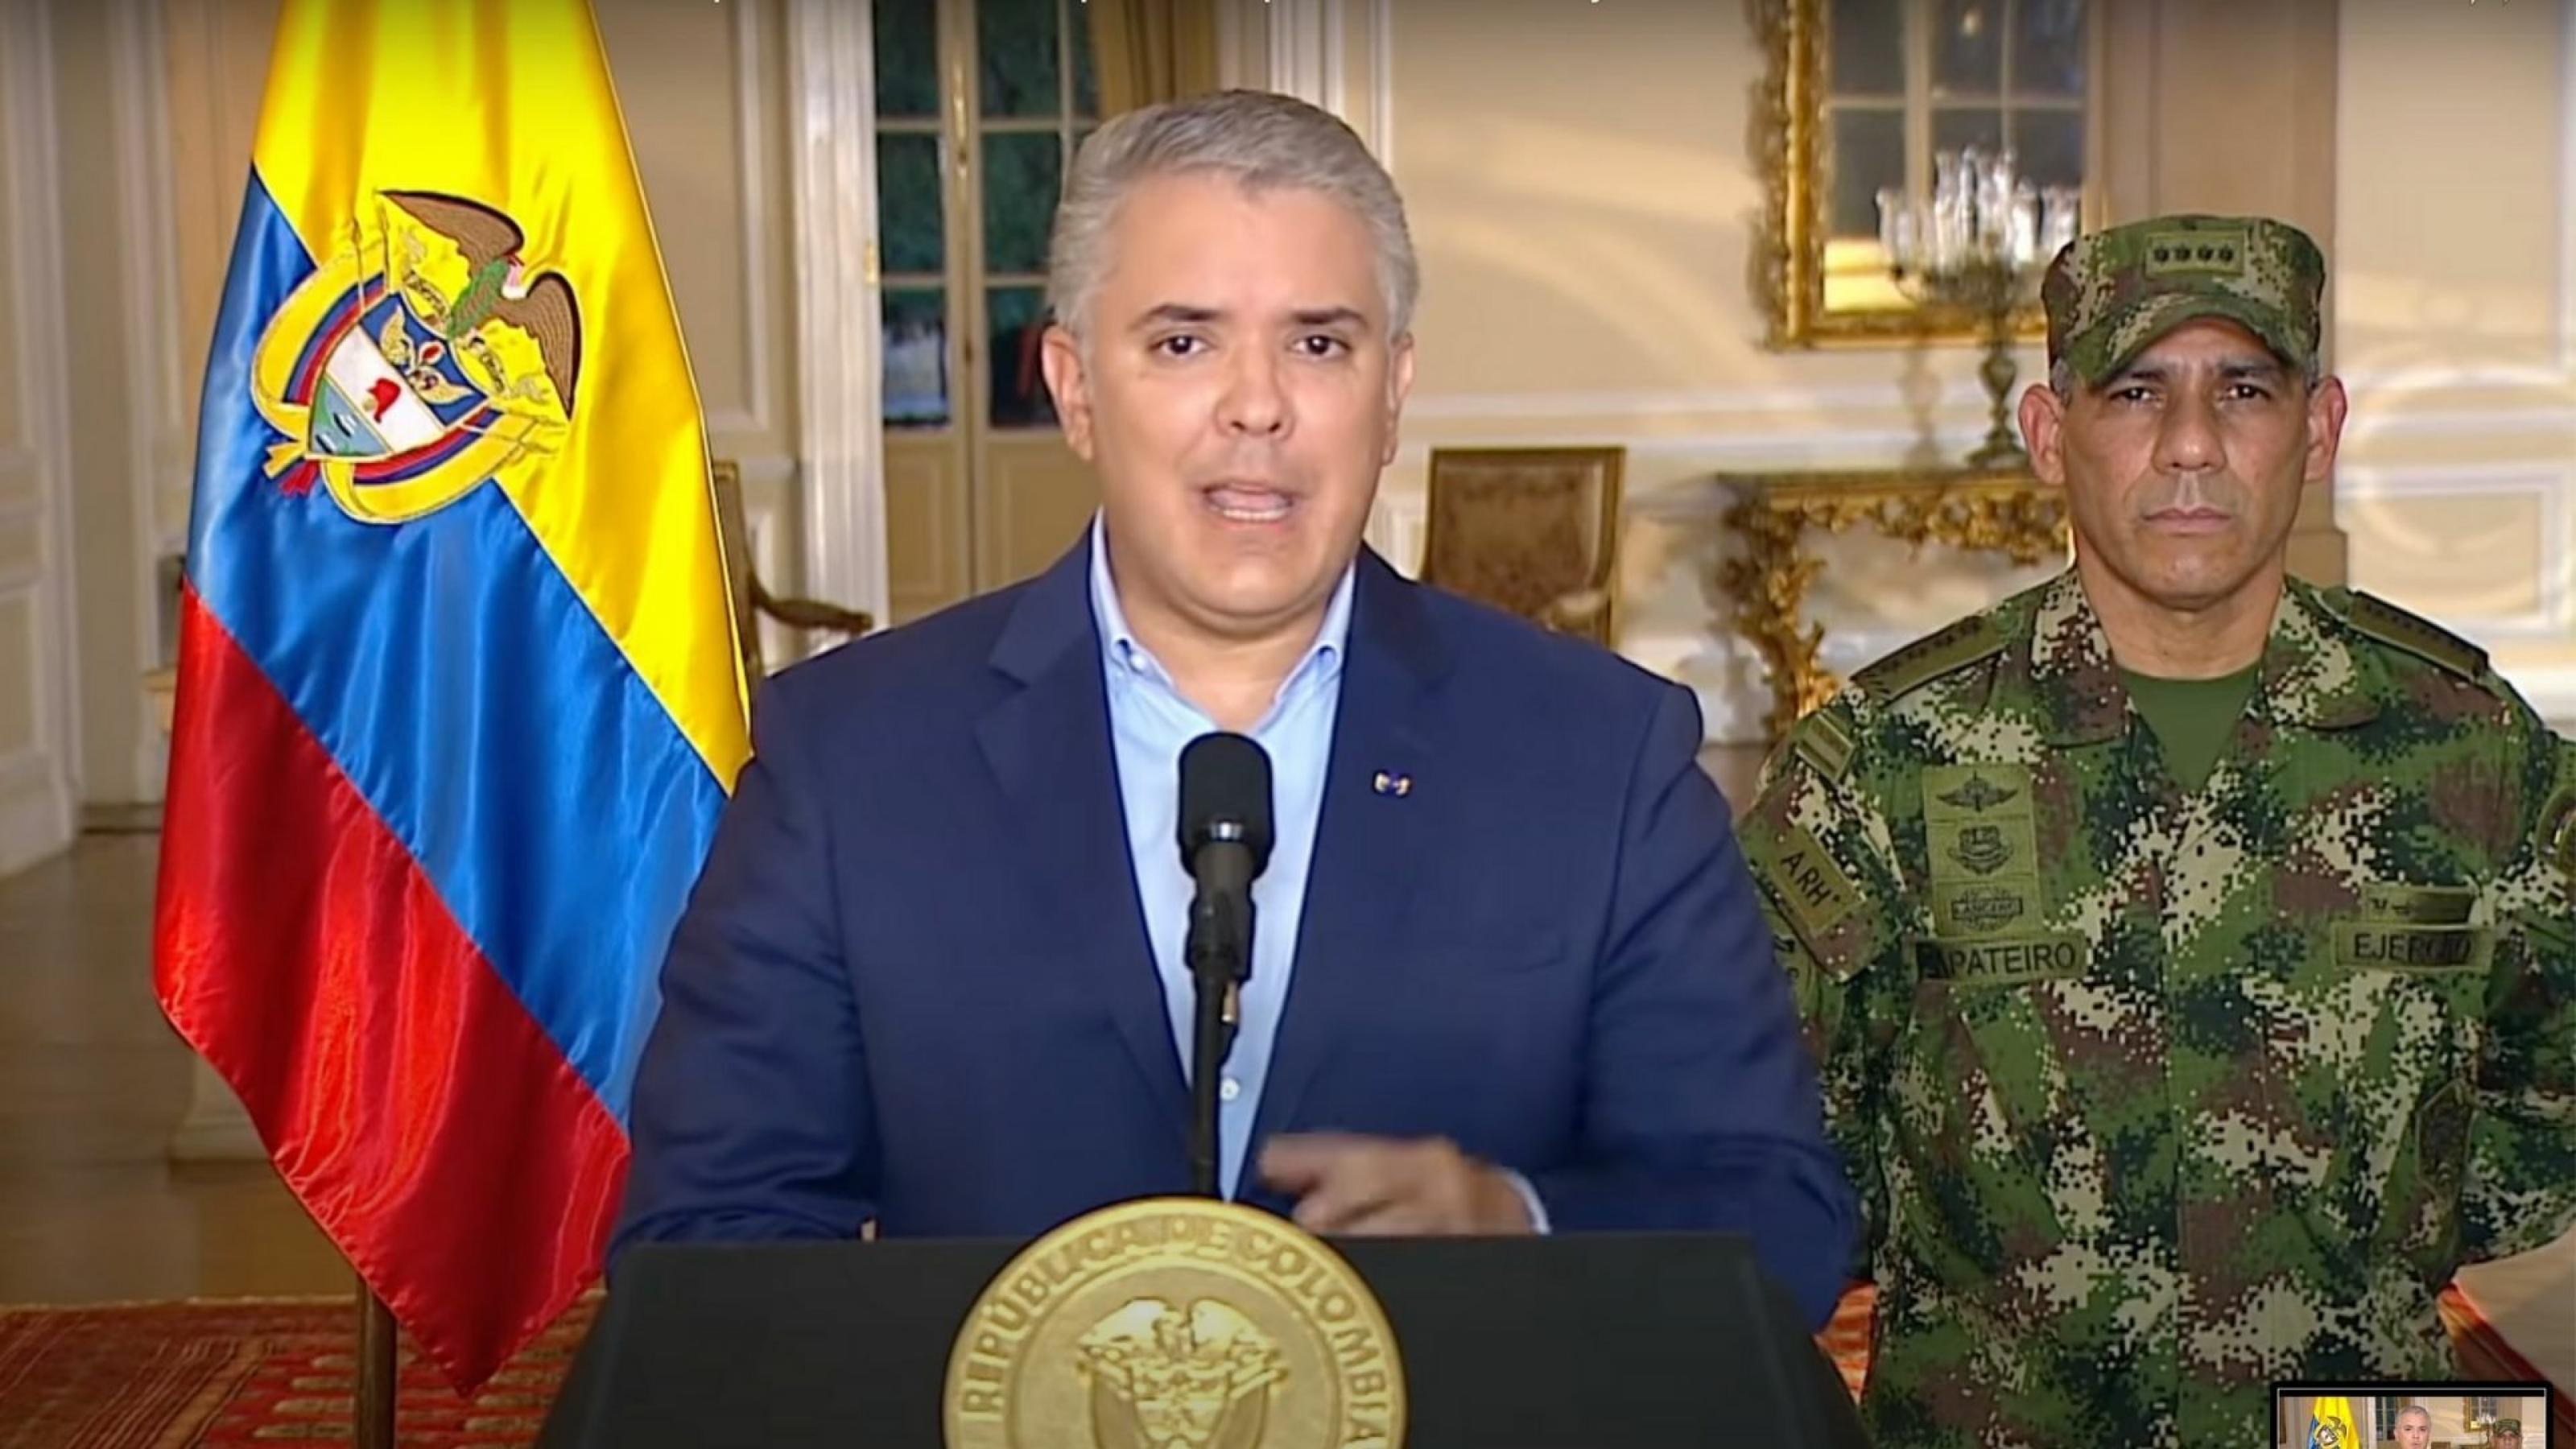 Ein Mann mit jungem Gesicht und grauen Haaren steht am Redepult im Präsidentschaftspalast. Er trägt einen Anzug mit Hemd ohne Krawatte. Hinter ihm stehen die kolumbianische Flagge und ein General in Uniform mit ernstem Gesicht.